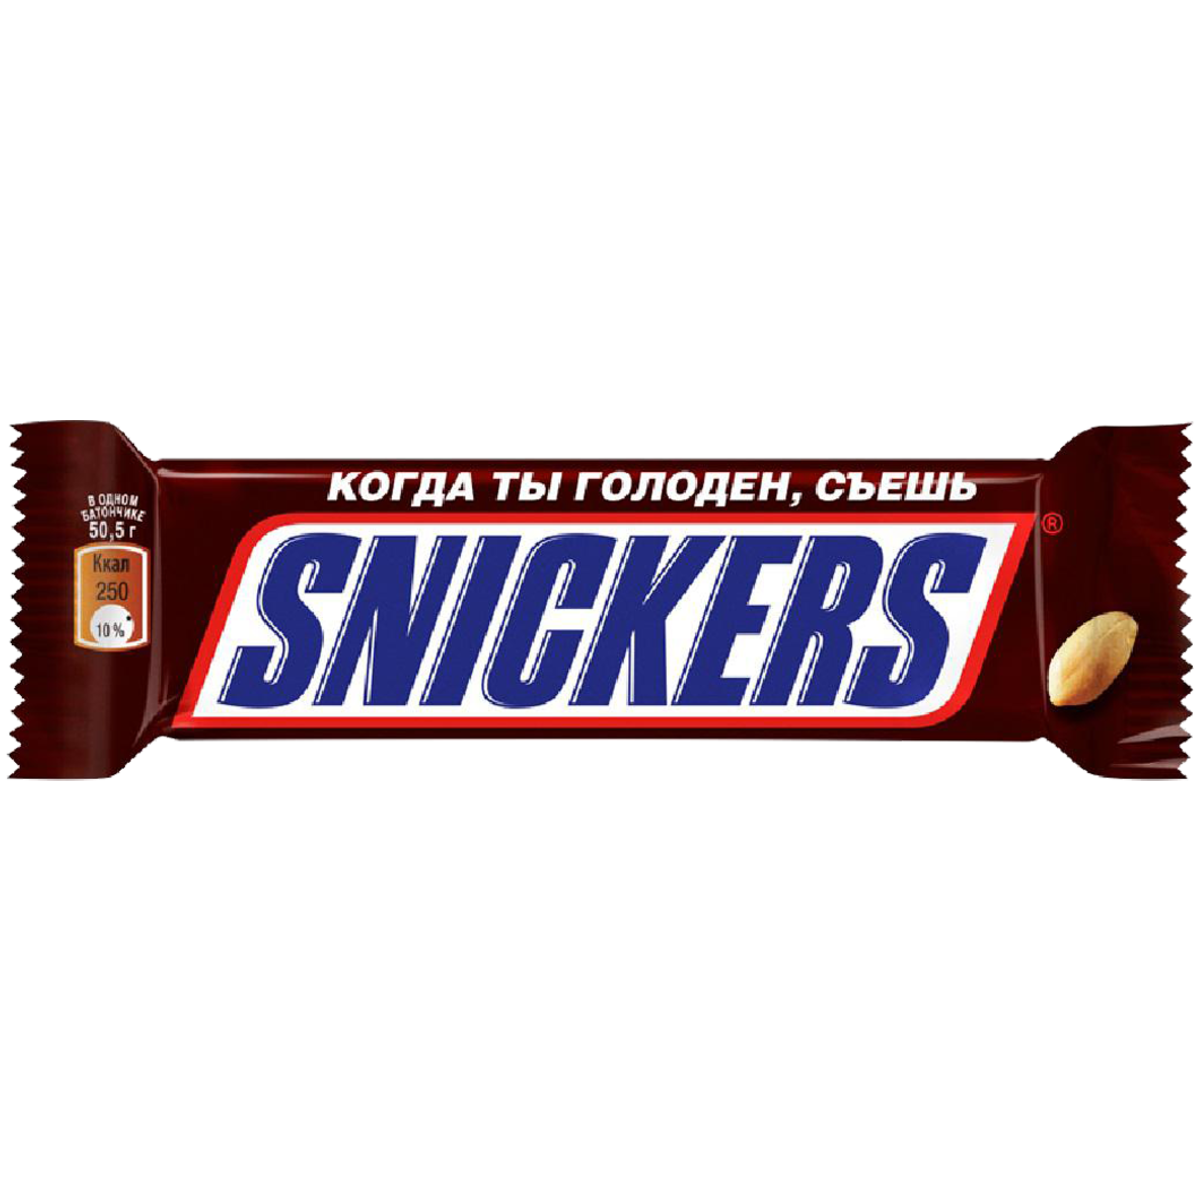 Название шок. Батончик snickers 50,5 гр. Шоколадный батончик snickers, 50г. Батончик шоколадный snickers 50,5гр. Батончик ШОК. Сникерс 50,5г.